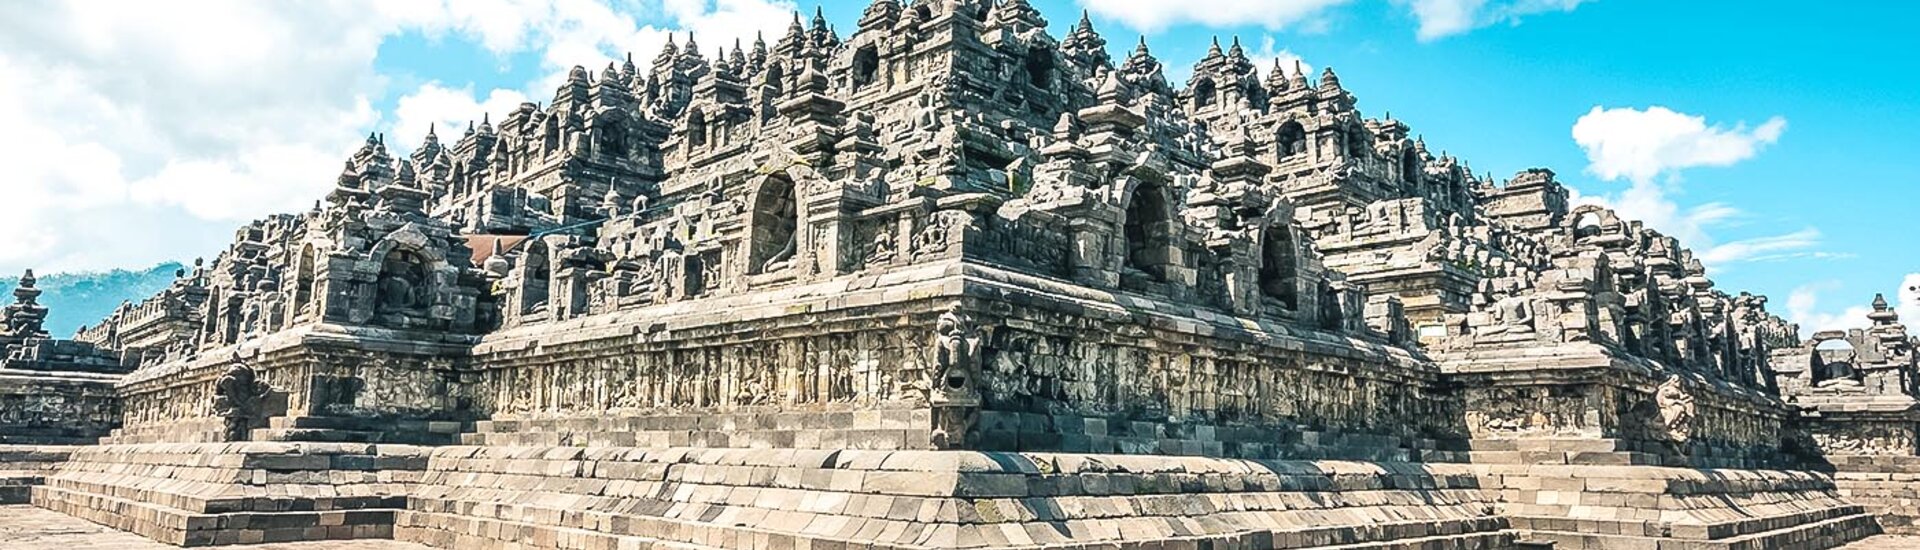 Tempel Borobudur in Indonesien